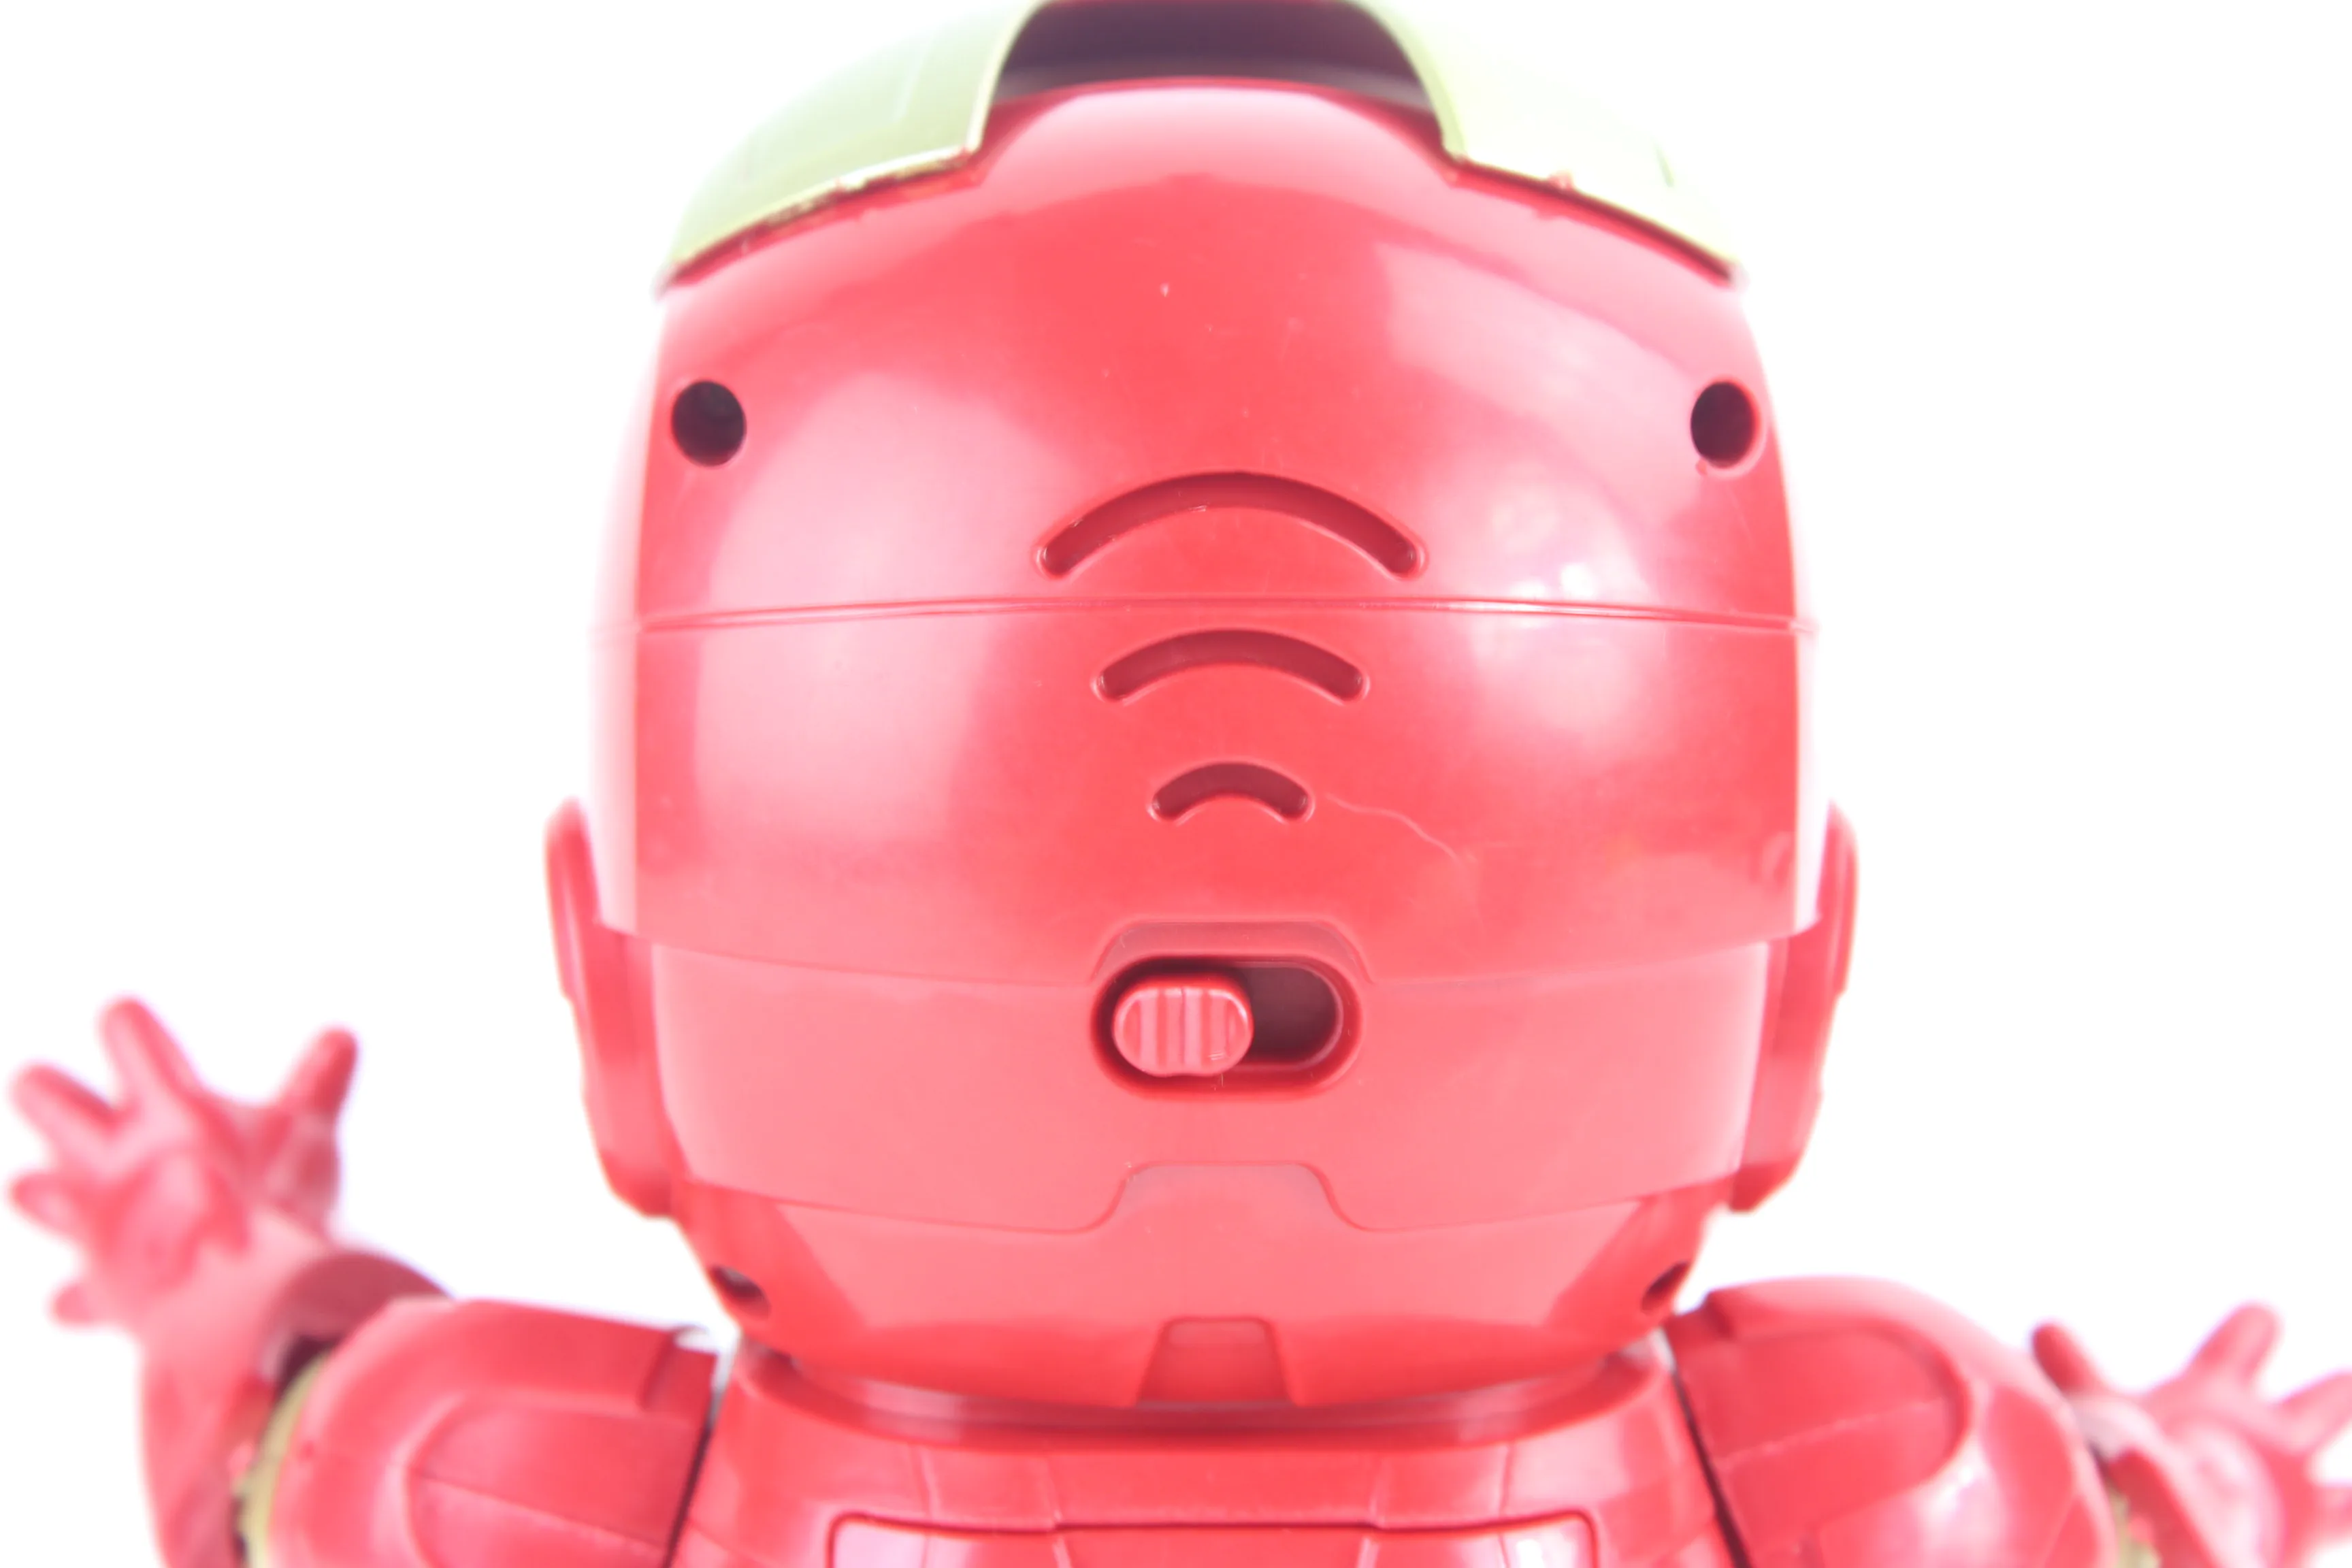 Marvel Новые горячие Мстители игрушки танцующий Железный человек робот с светомузыкальная игрушка Tony Stark электрическая фигурка игрушка для детей подарок